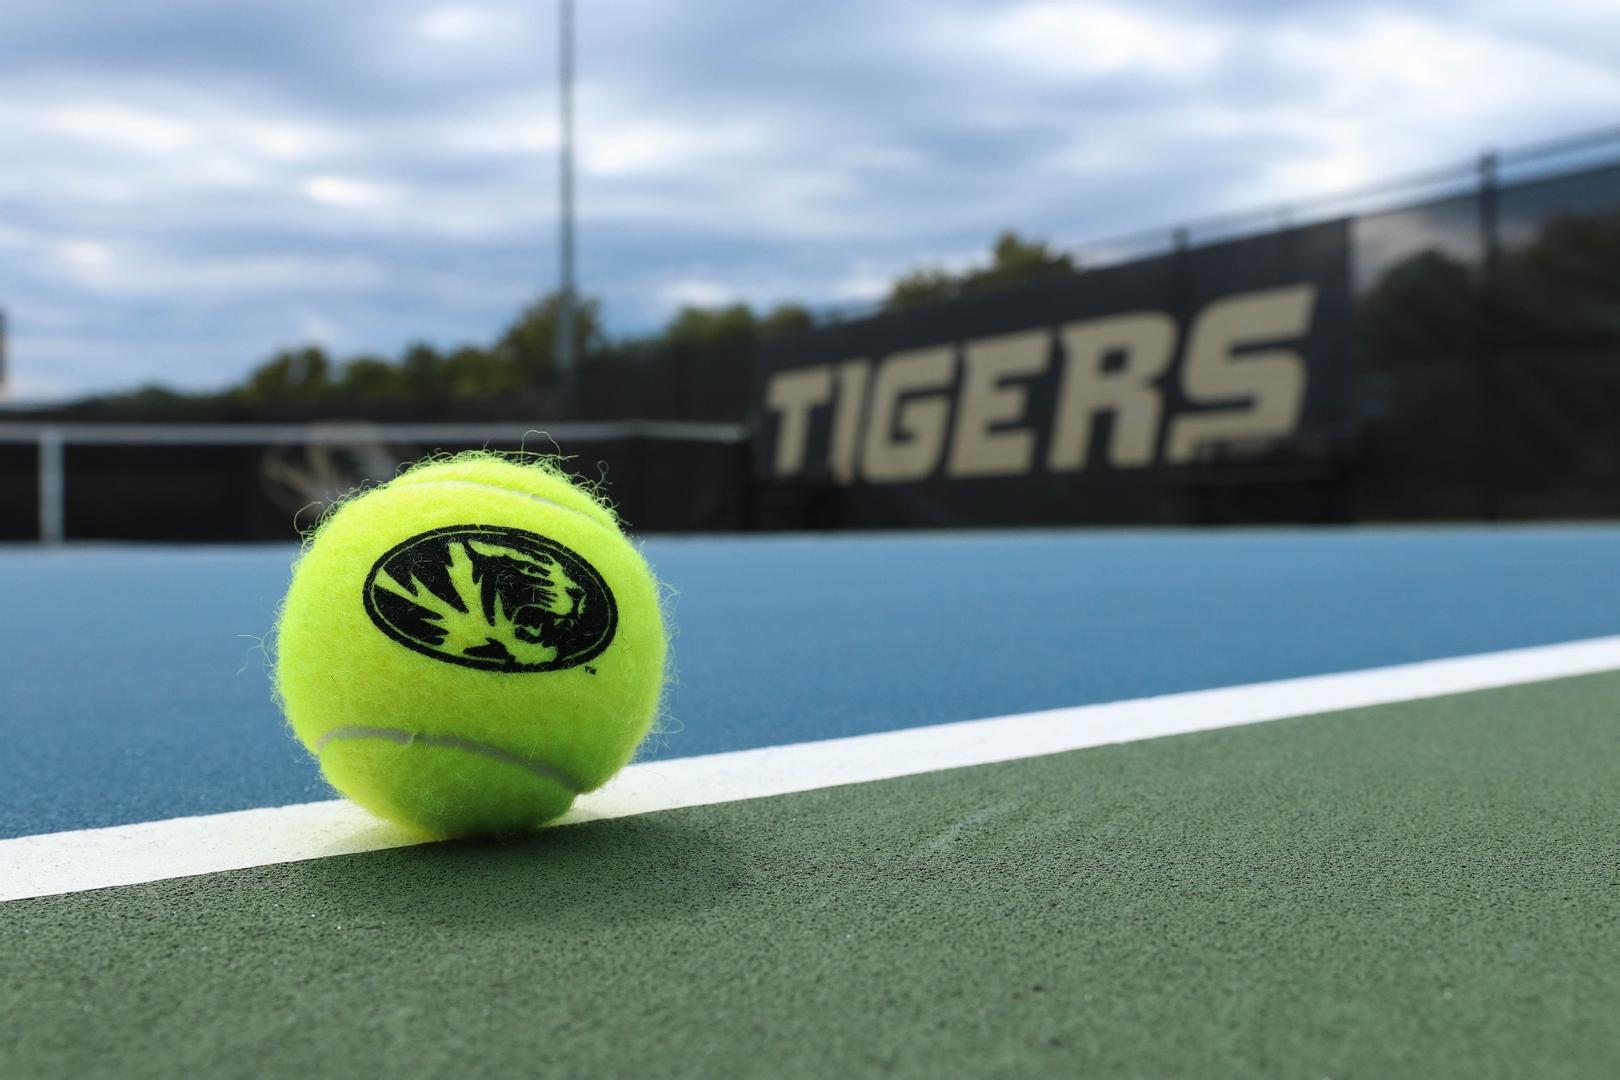 Mizzou Tigers vs. Kansas City Kangaroos at Green Tennis Center in Columbia, MO, on Friday, September 18, 2022. John Gronski/Mizzou Athletics